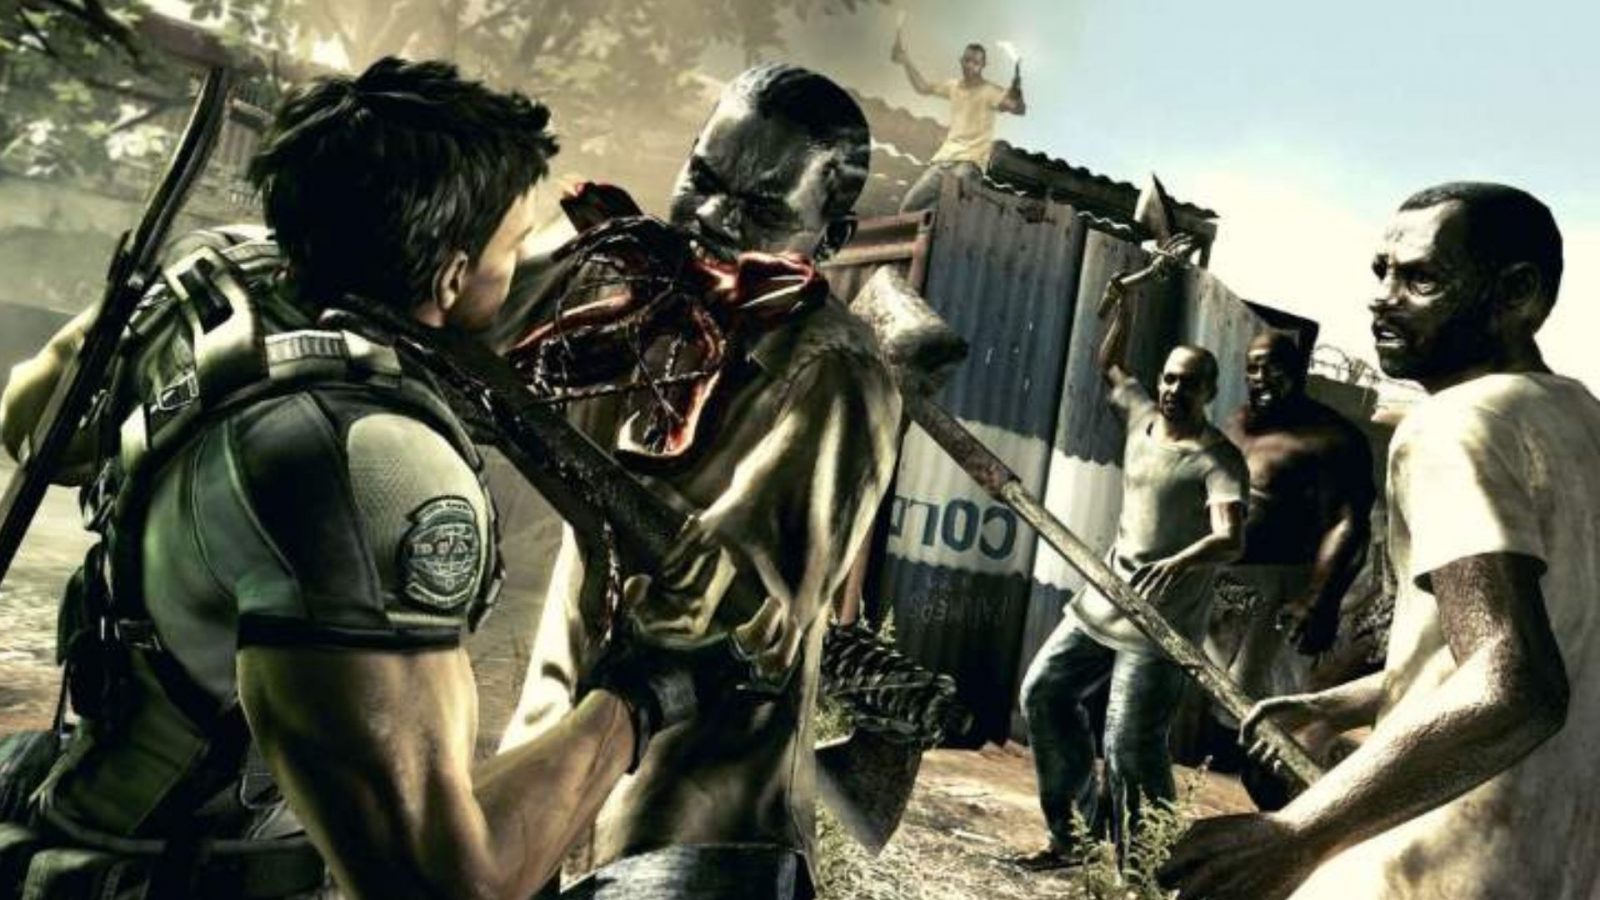 Di cosa tratta la controversia su Resident Evil 5?  Spiegazione delle accuse di razzismo